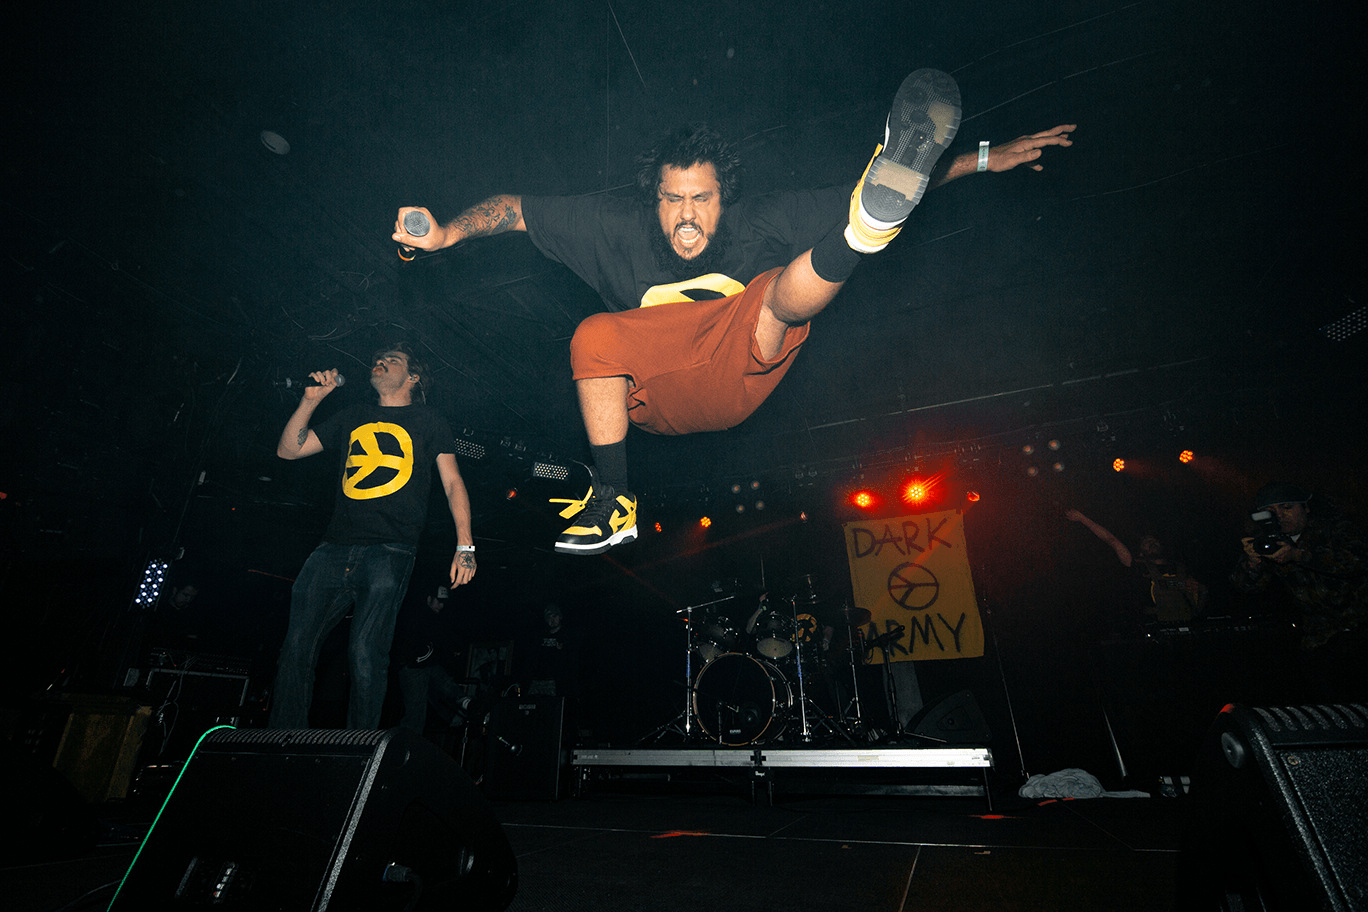 Zdjęcie skaczącego na scenie Darkiego